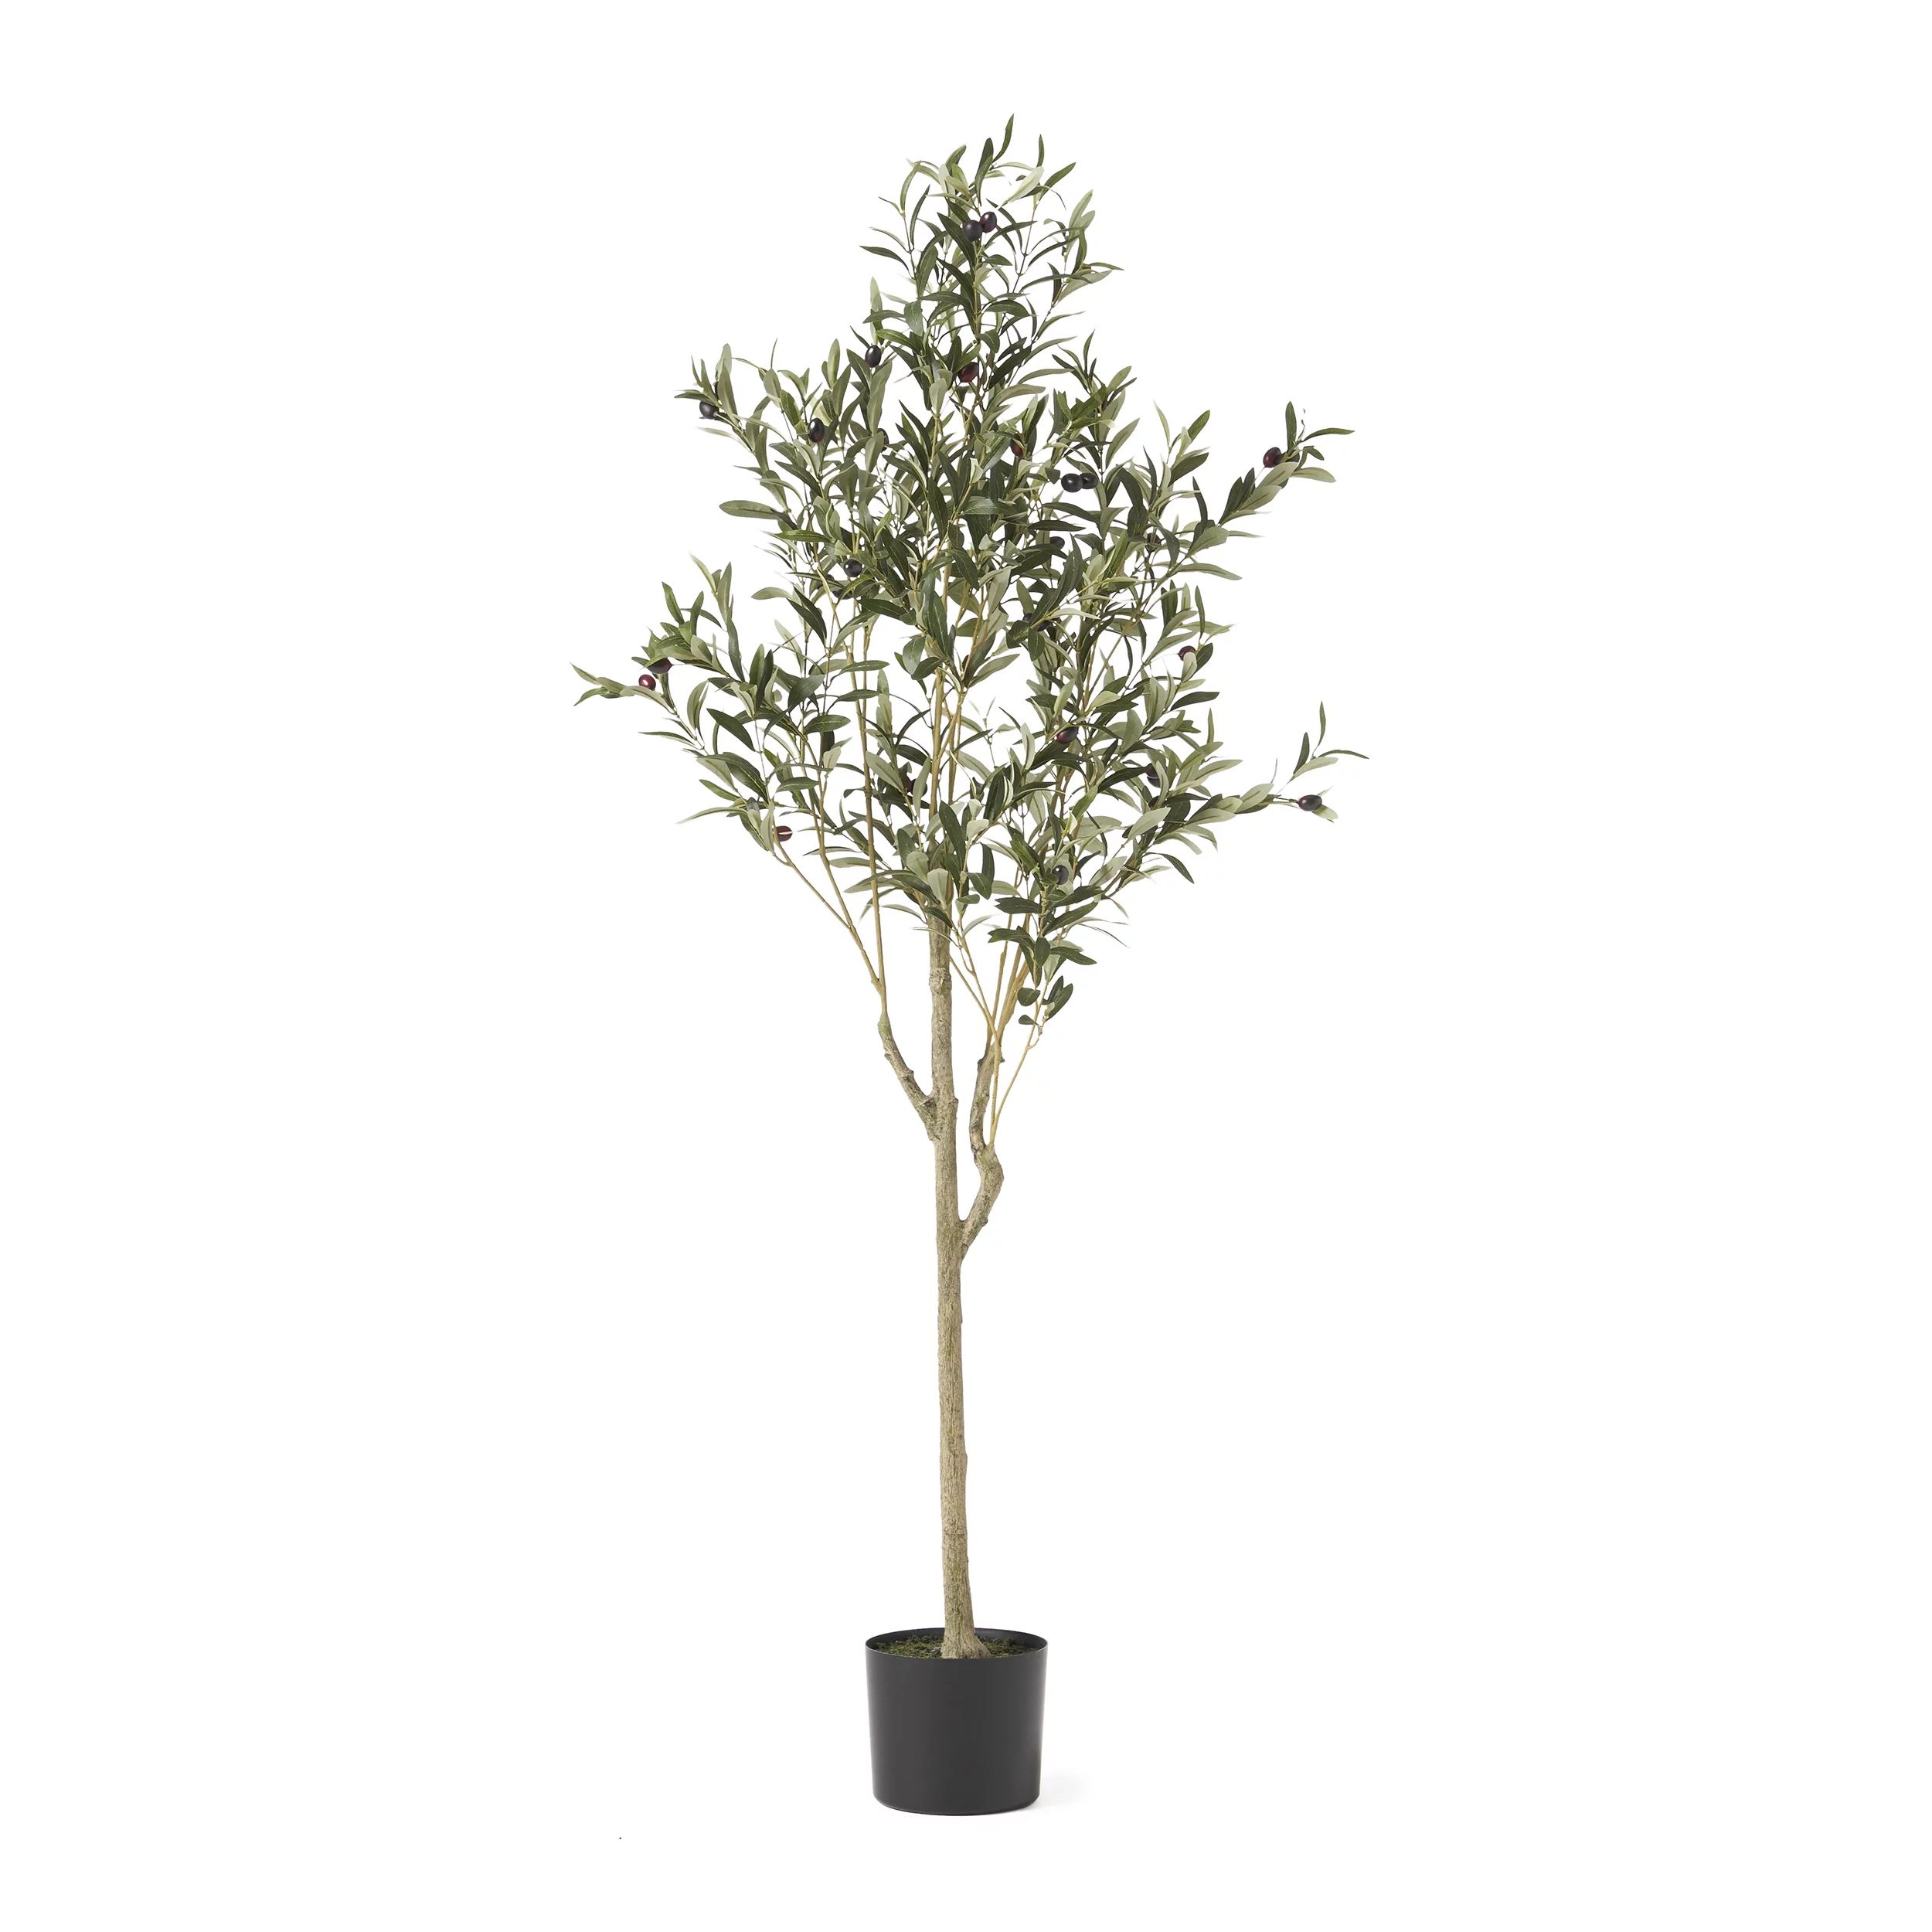 Taos 5' x 2' Artificial Tabletop Olive Tree, Green - Walmart.com | Walmart (US)